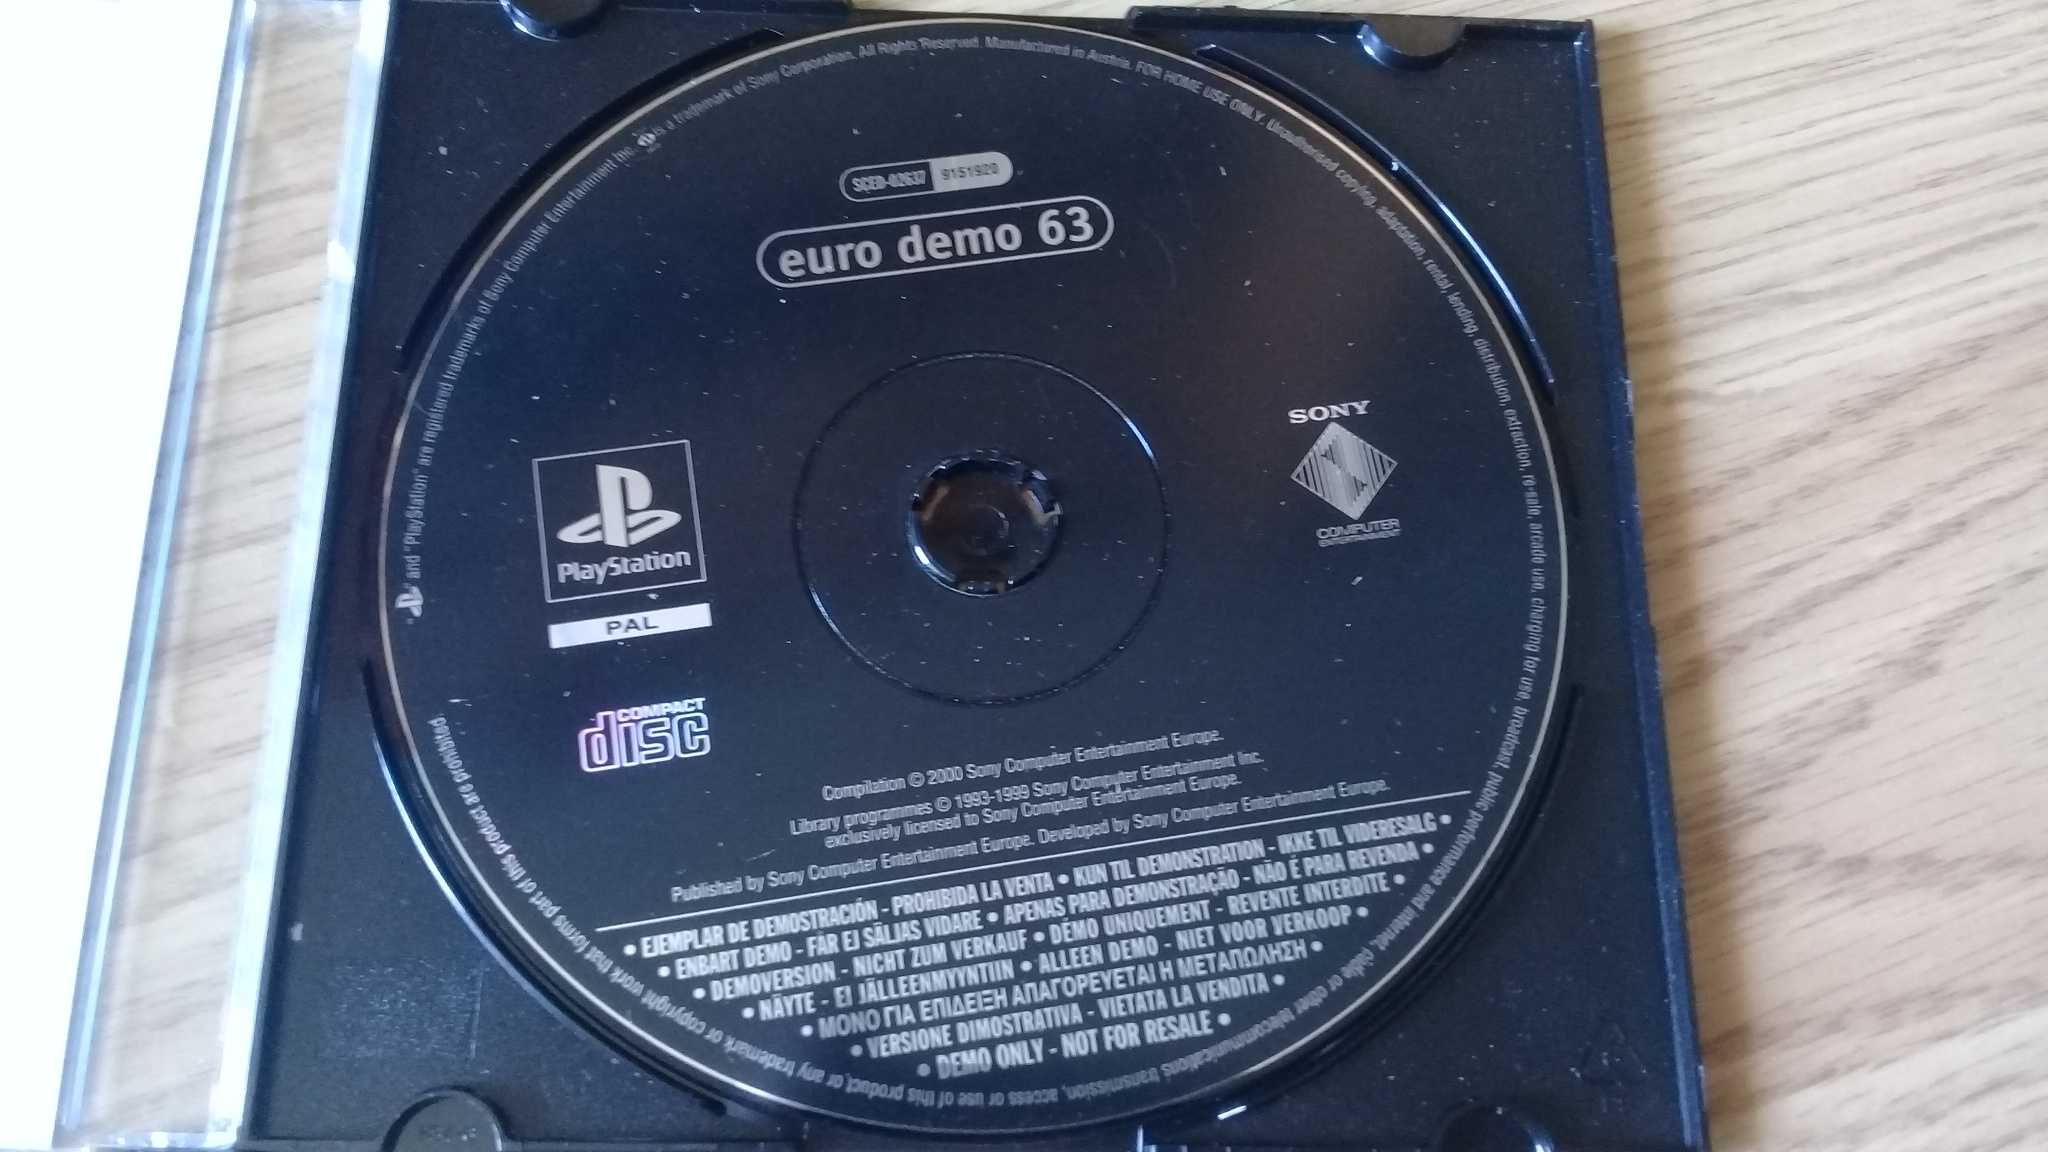 Płyta nr 63 na PlayStation 1 z czasopisma PlayStation Magazyn z lat 90